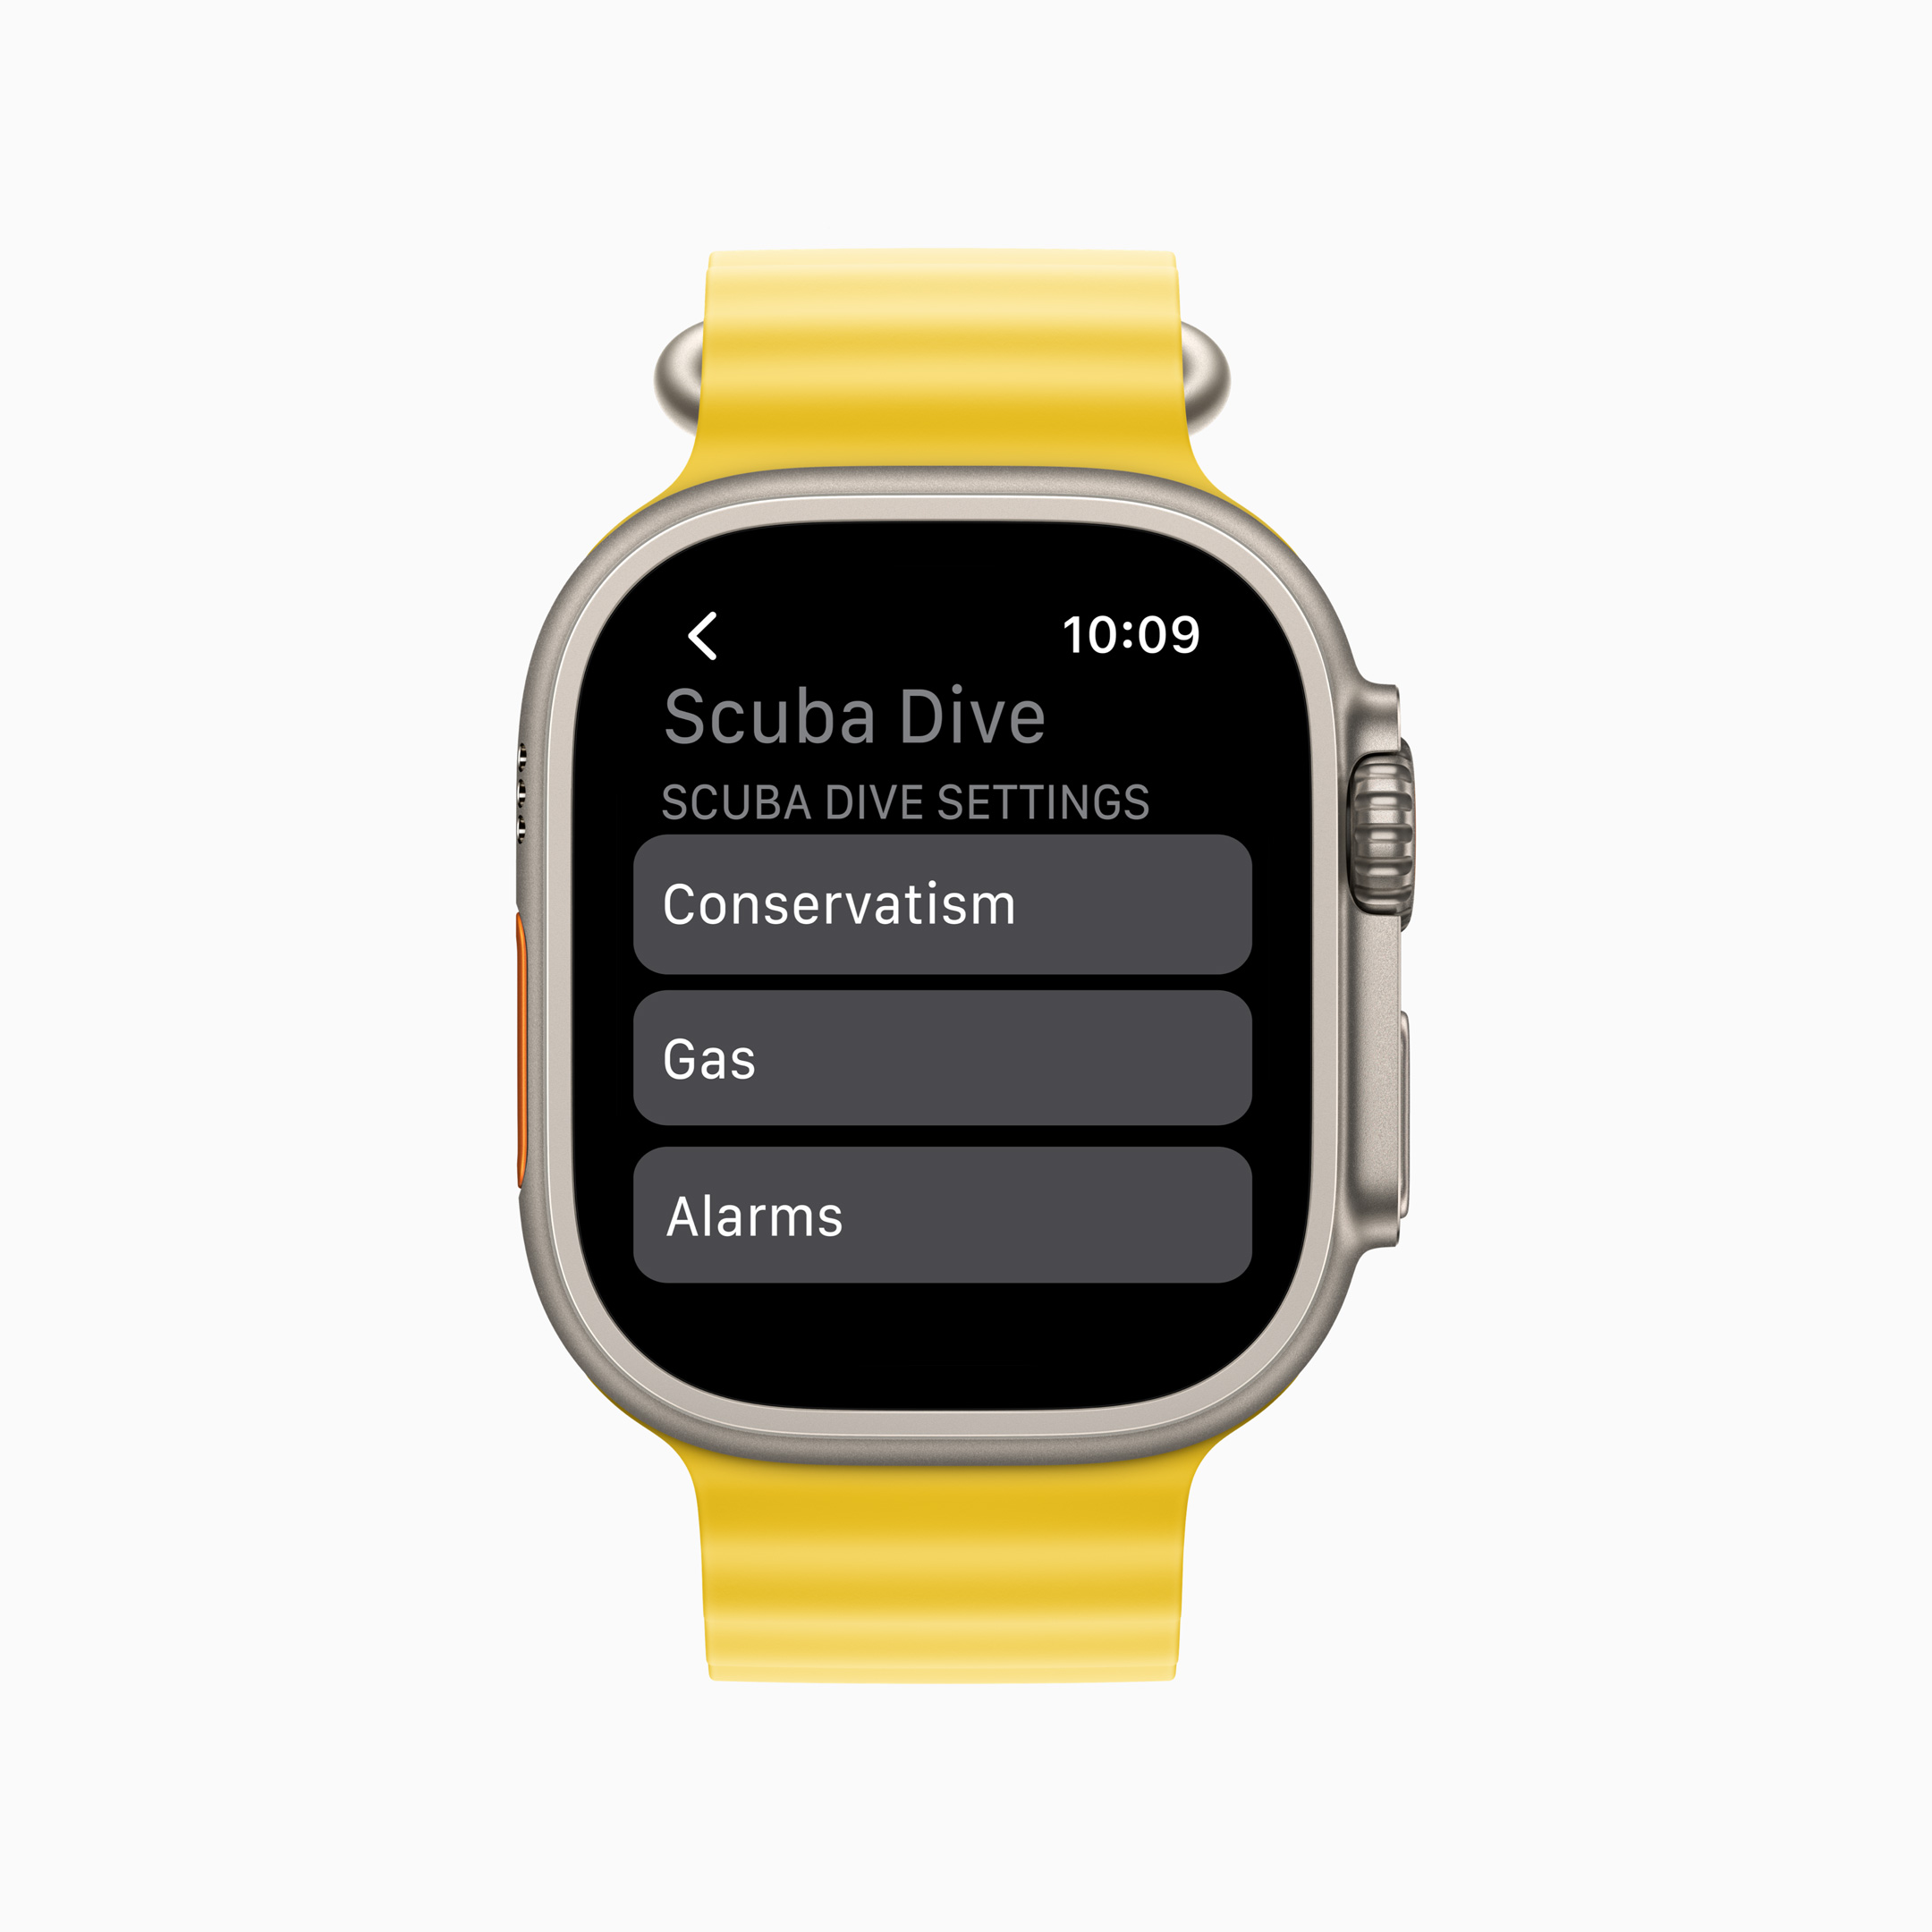 用 Oceanic+ app 和 Apple Watch Ultra 潛進新深度 @3C 達人廖阿輝